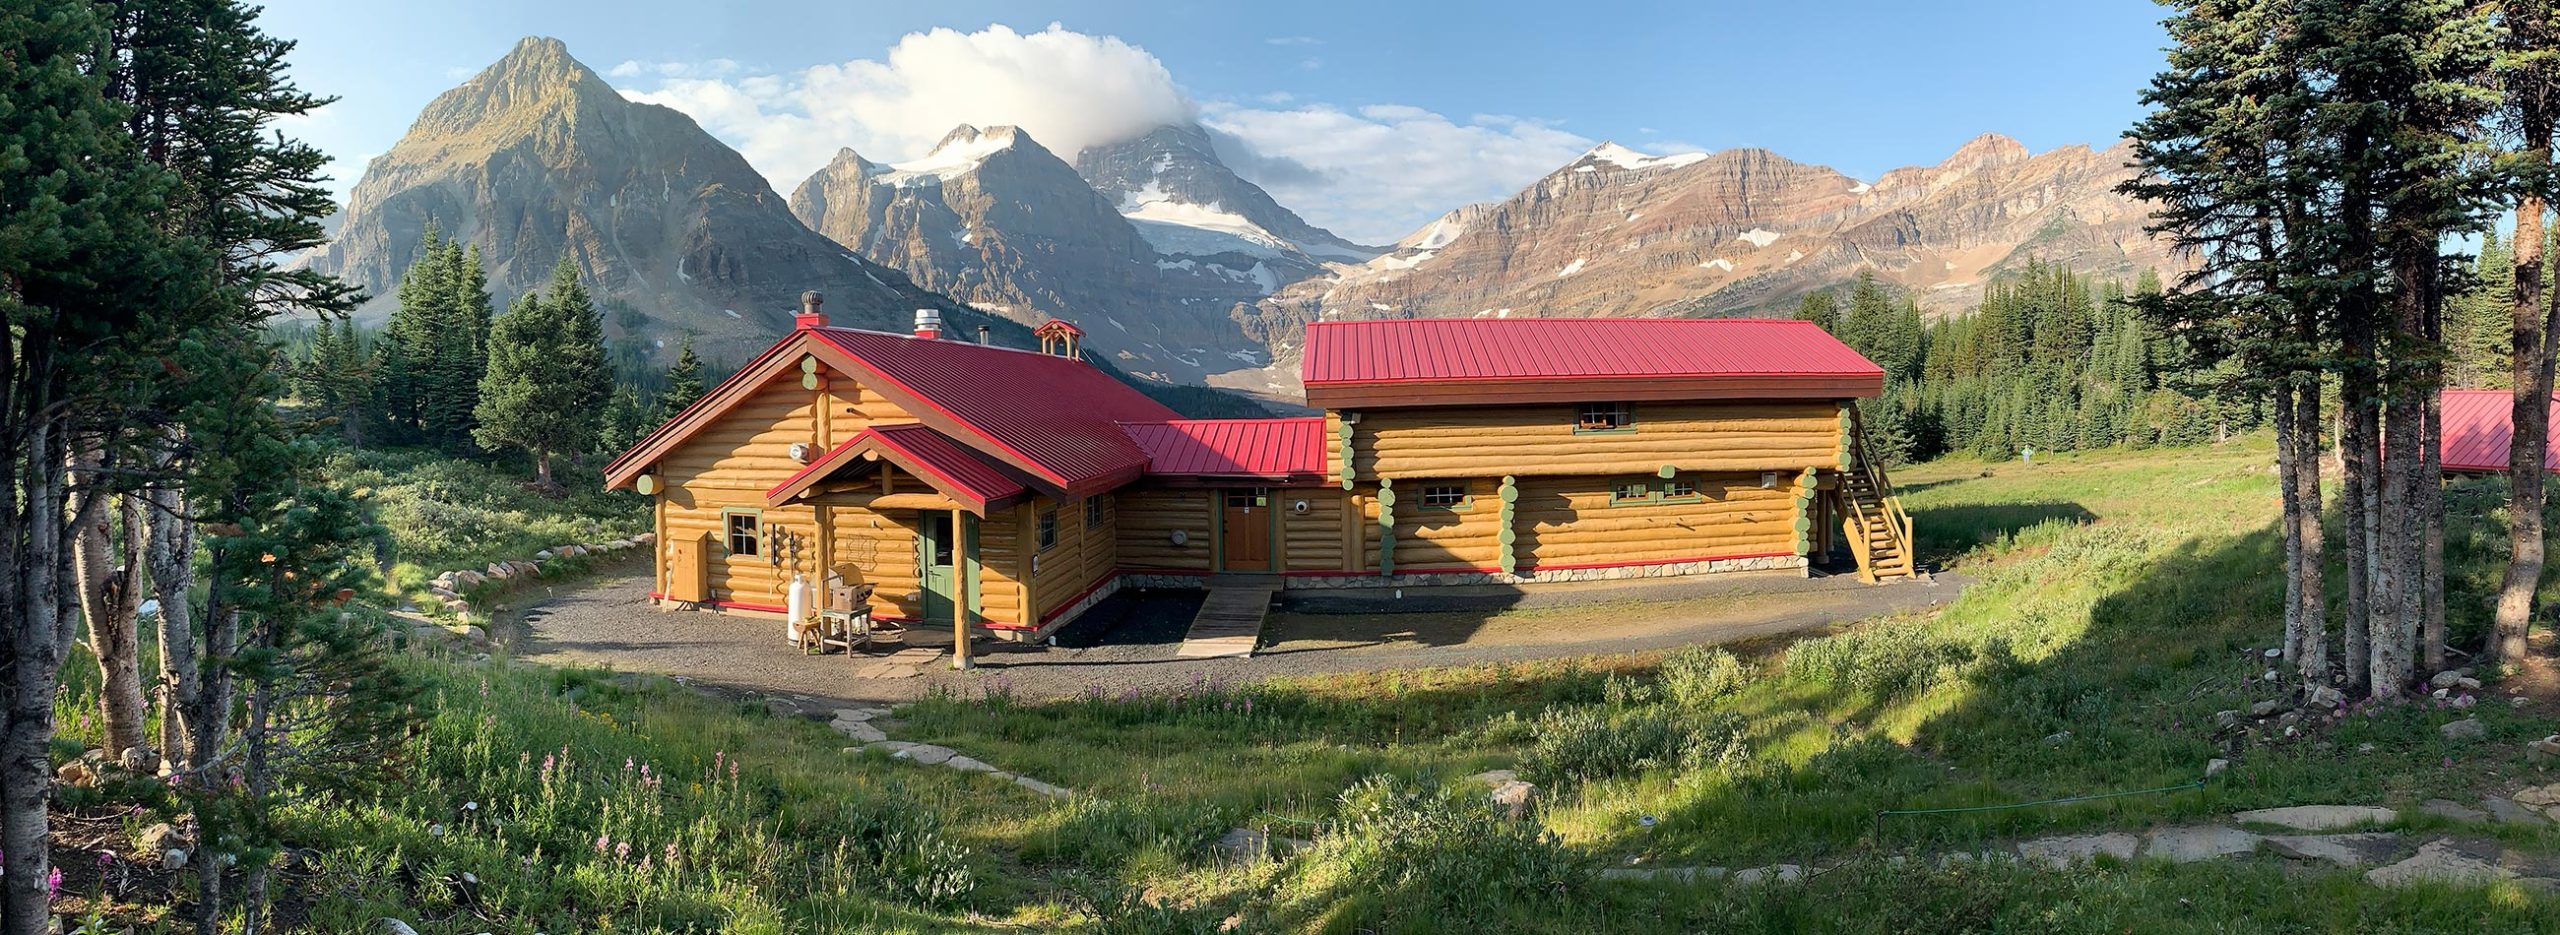 Lodge Assiniboine, Mont Assiniboine, Colombie-Britannique, Canada / Assiniboine Lodge, Mount Assiniboine, BC, Canada